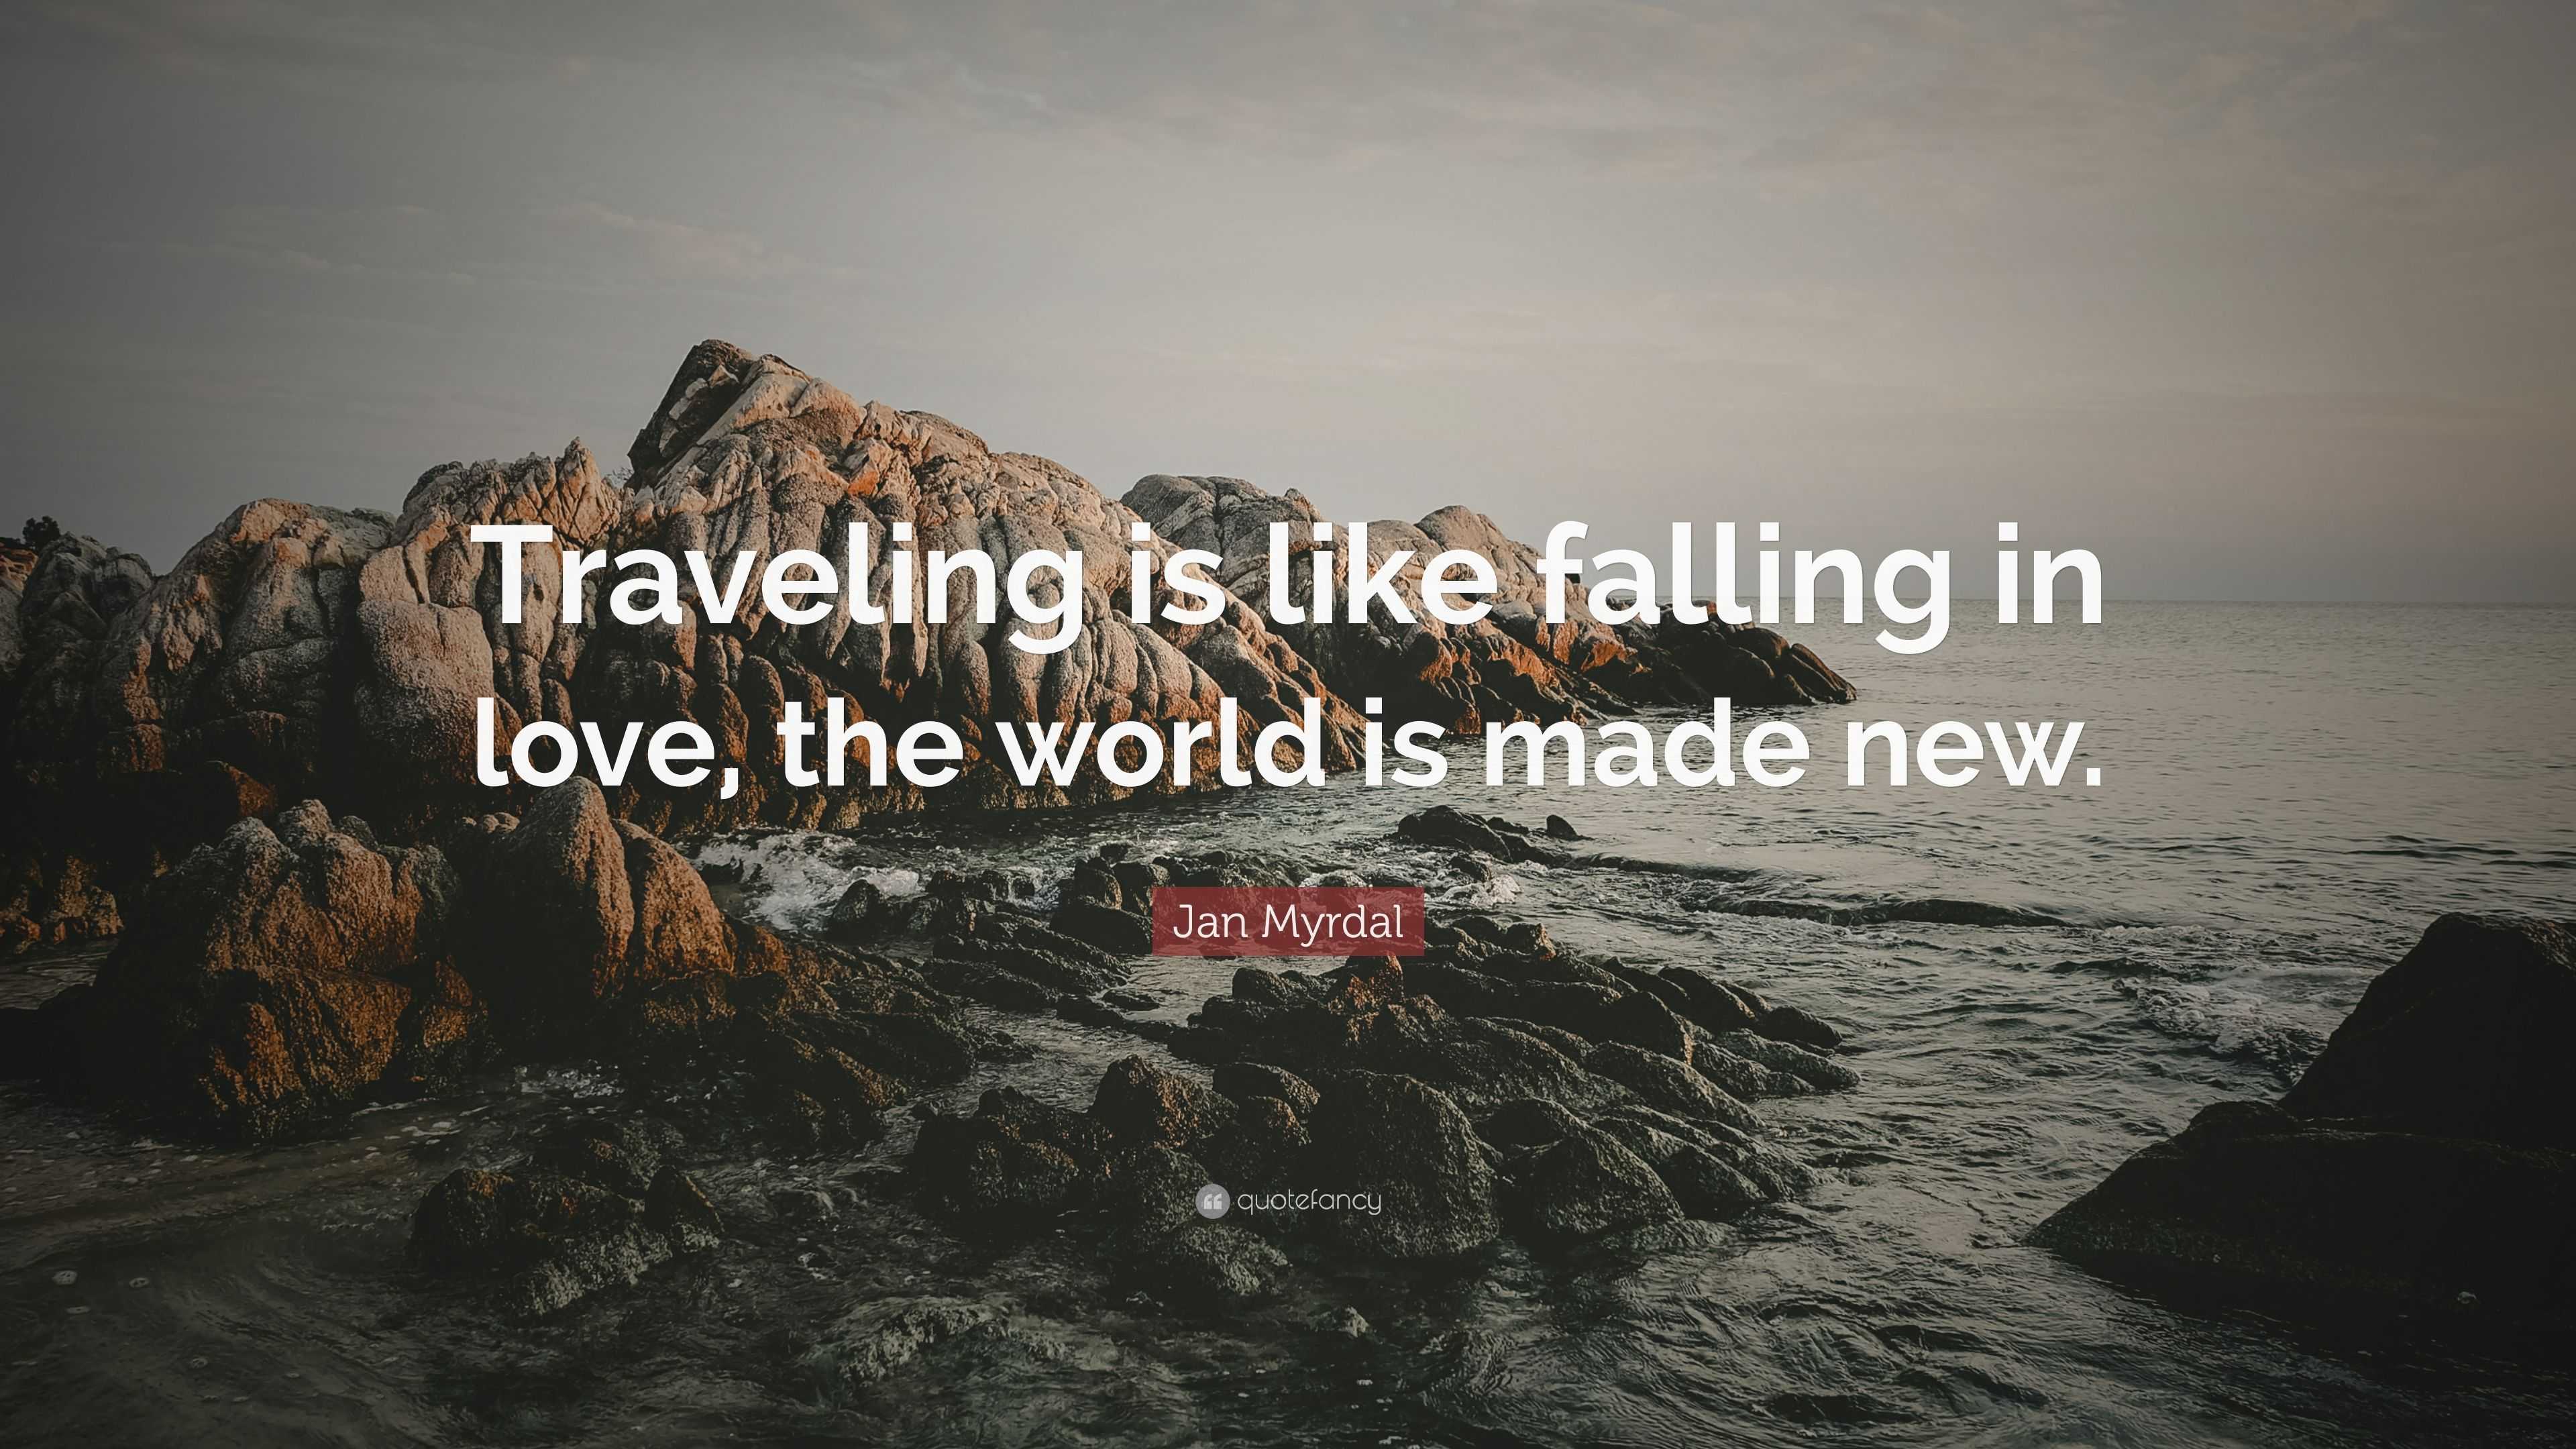 Jan Myrdal Quote: “Traveling is like falling in love